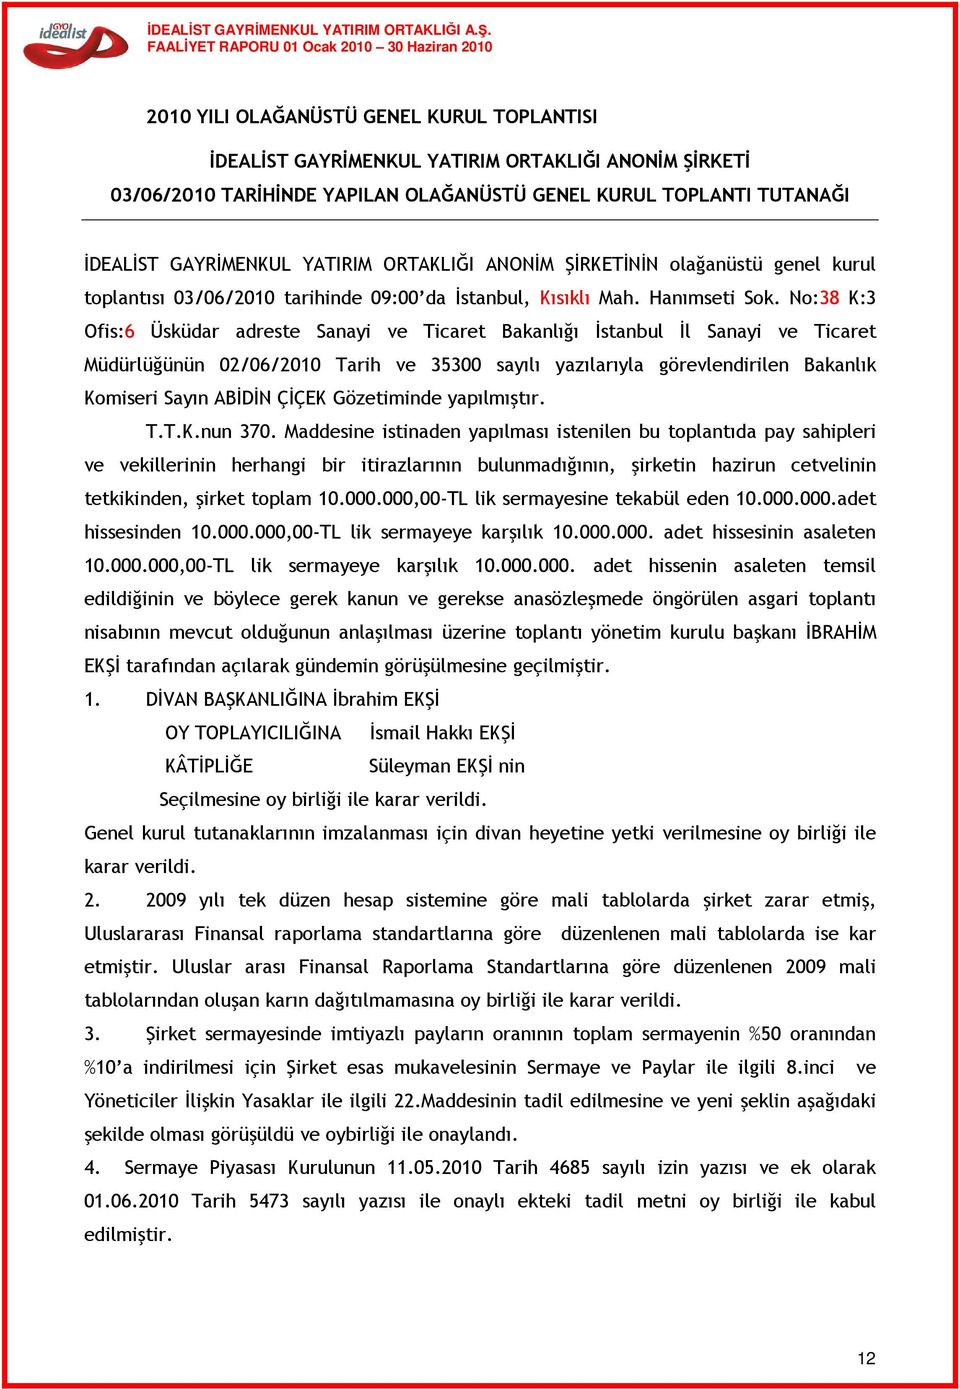 No:38 K:3 Ofis:6 Üsküdar adreste Sanayi ve Ticaret Bakanlığı İstanbul İl Sanayi ve Ticaret Müdürlüğünün 02/06/2010 Tarih ve 35300 sayılı yazılarıyla görevlendirilen Bakanlık Komiseri Sayın ABİDİN